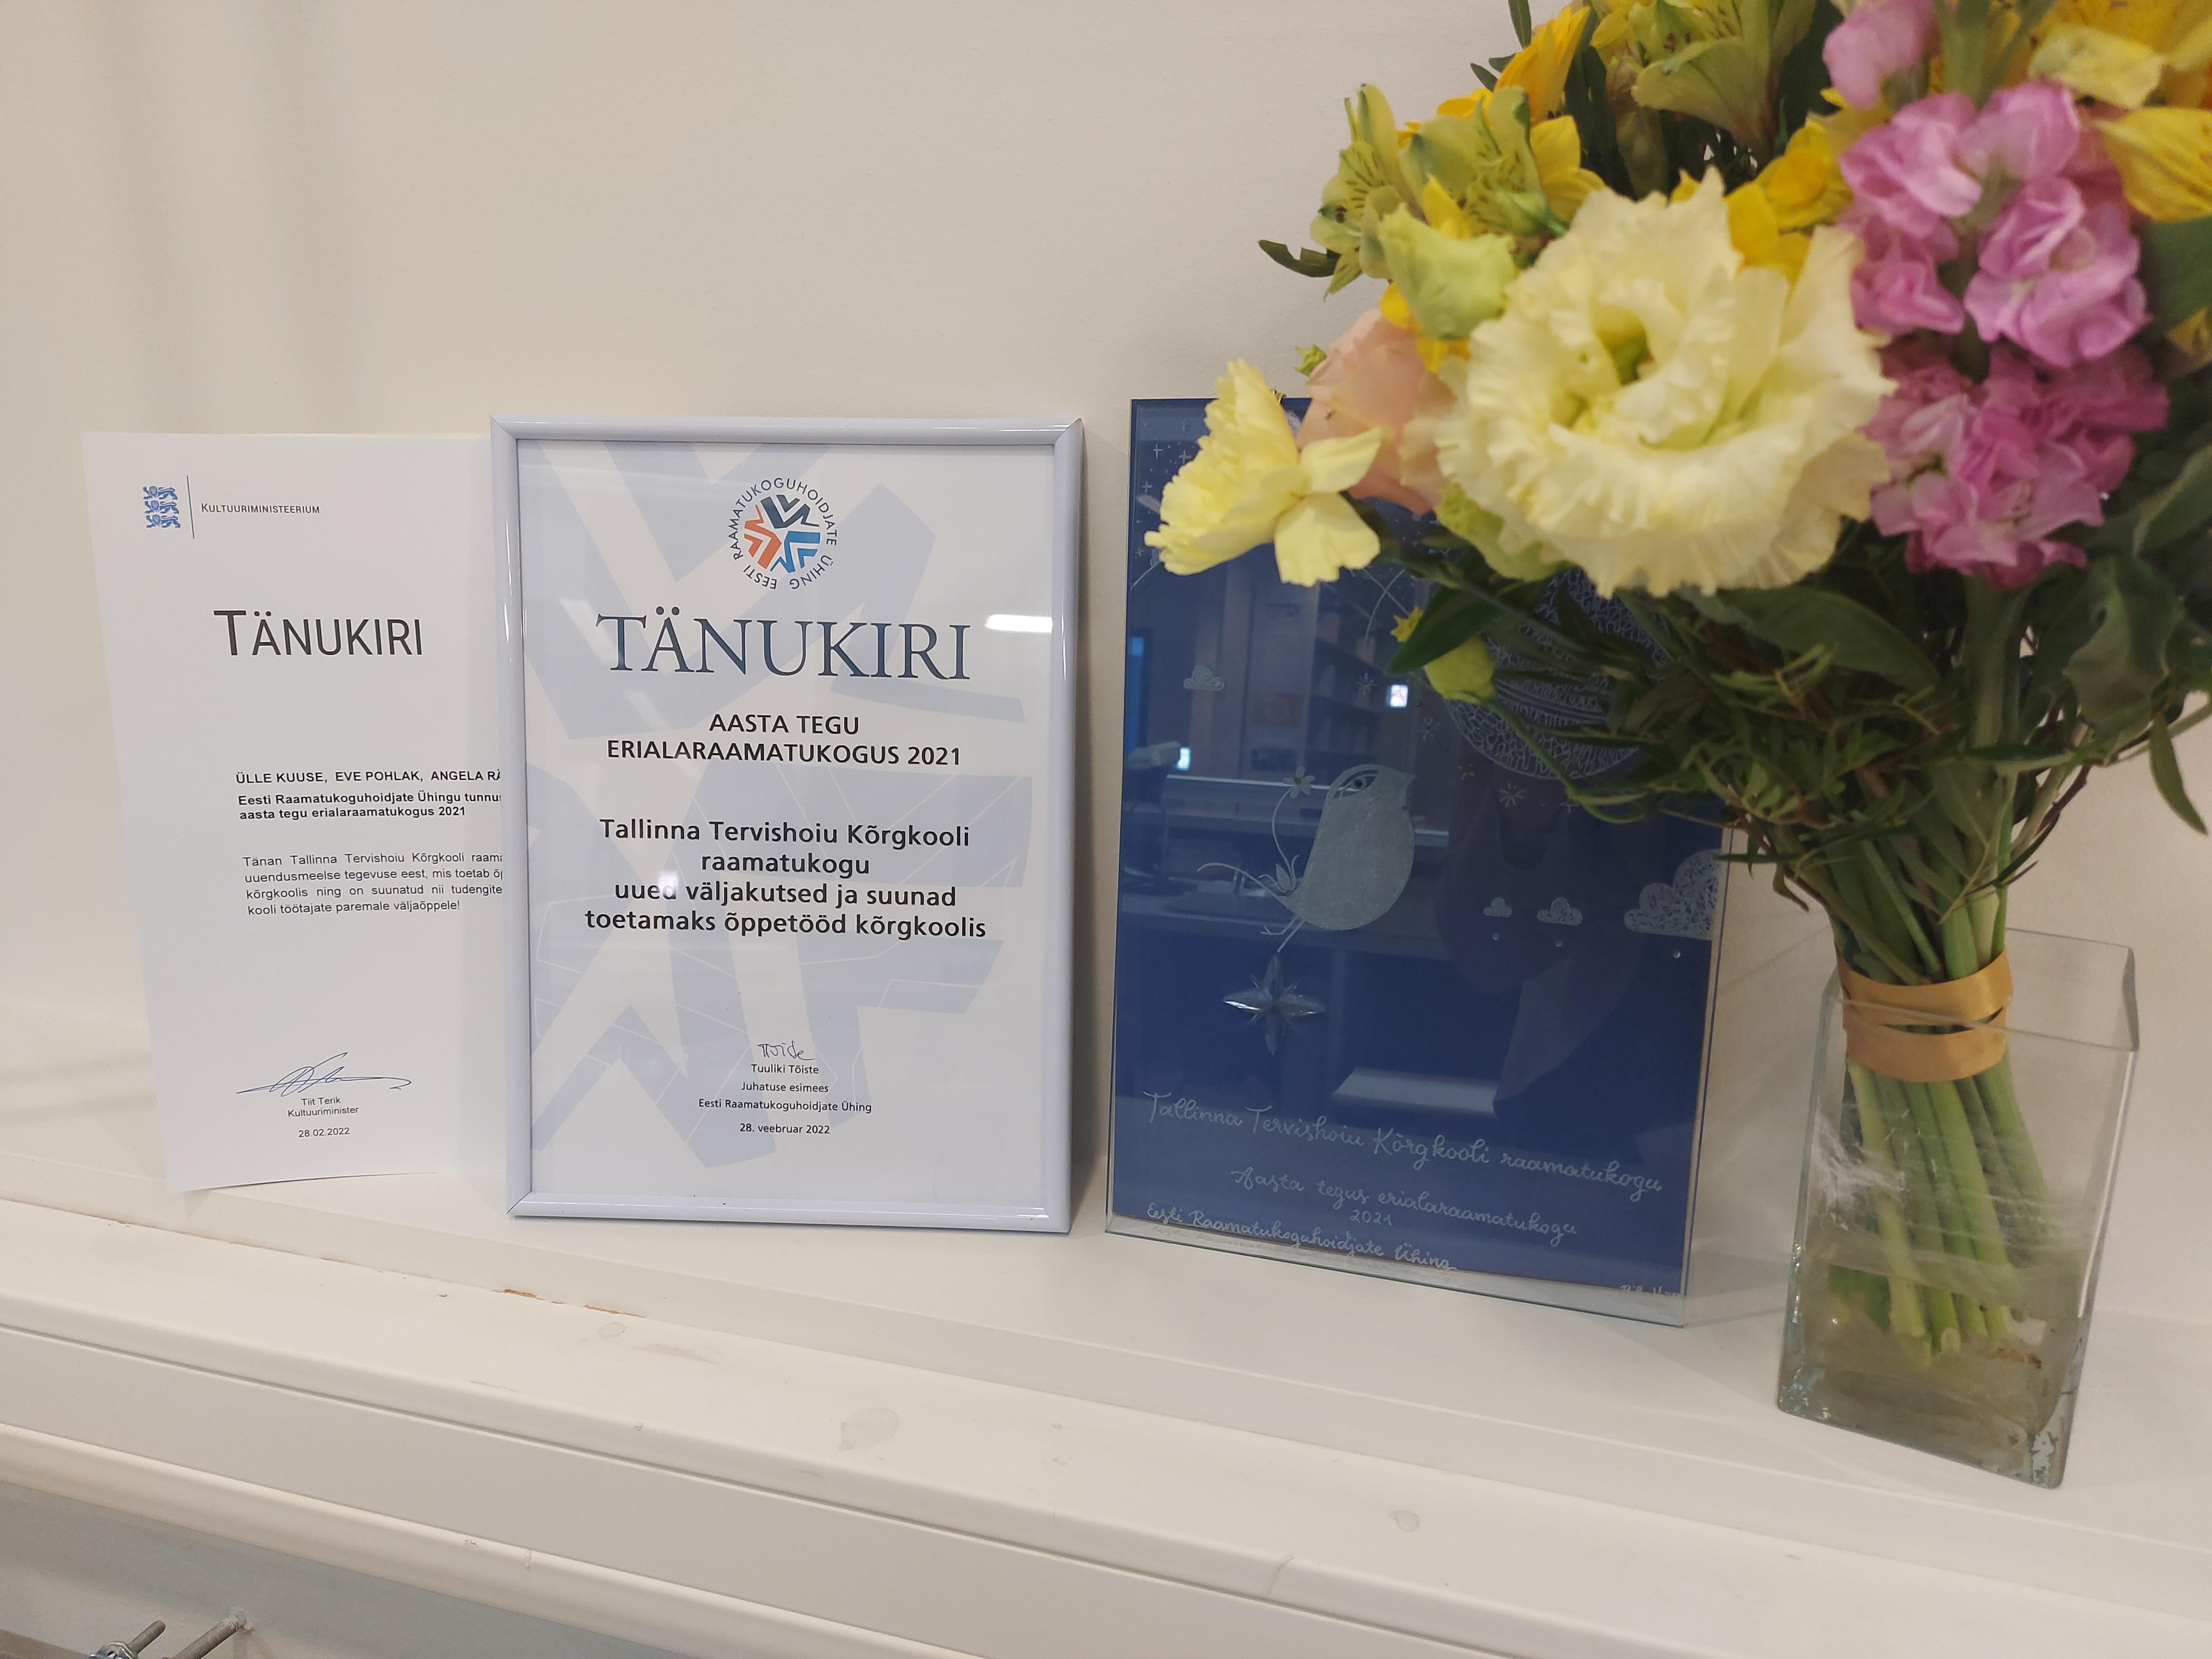 PALJU ÕNNE! Tallinna Tervishoiu Kõrgkooli raamatukogu pälvis auväärse tunnustuse